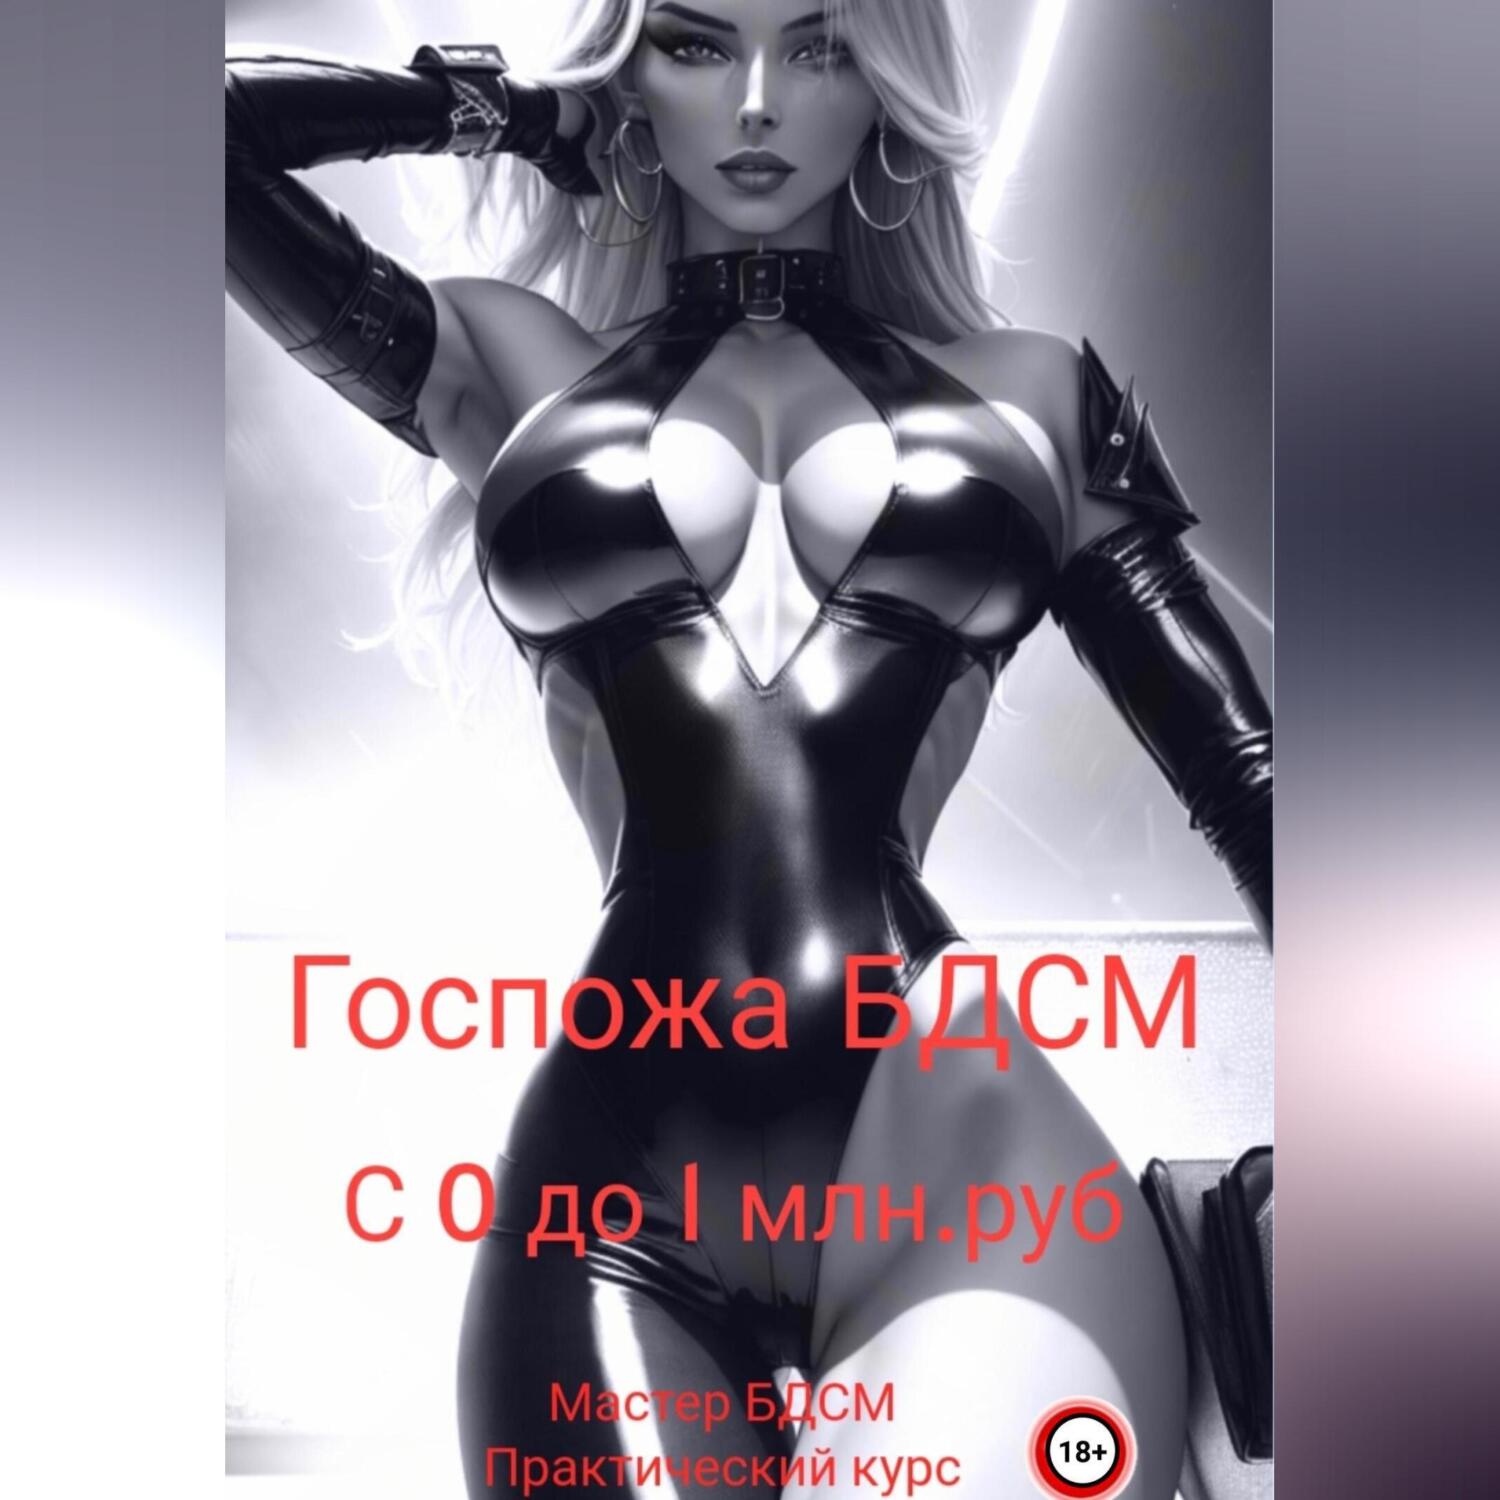 БДСМ фото, фотогалерея BDSM онлайн